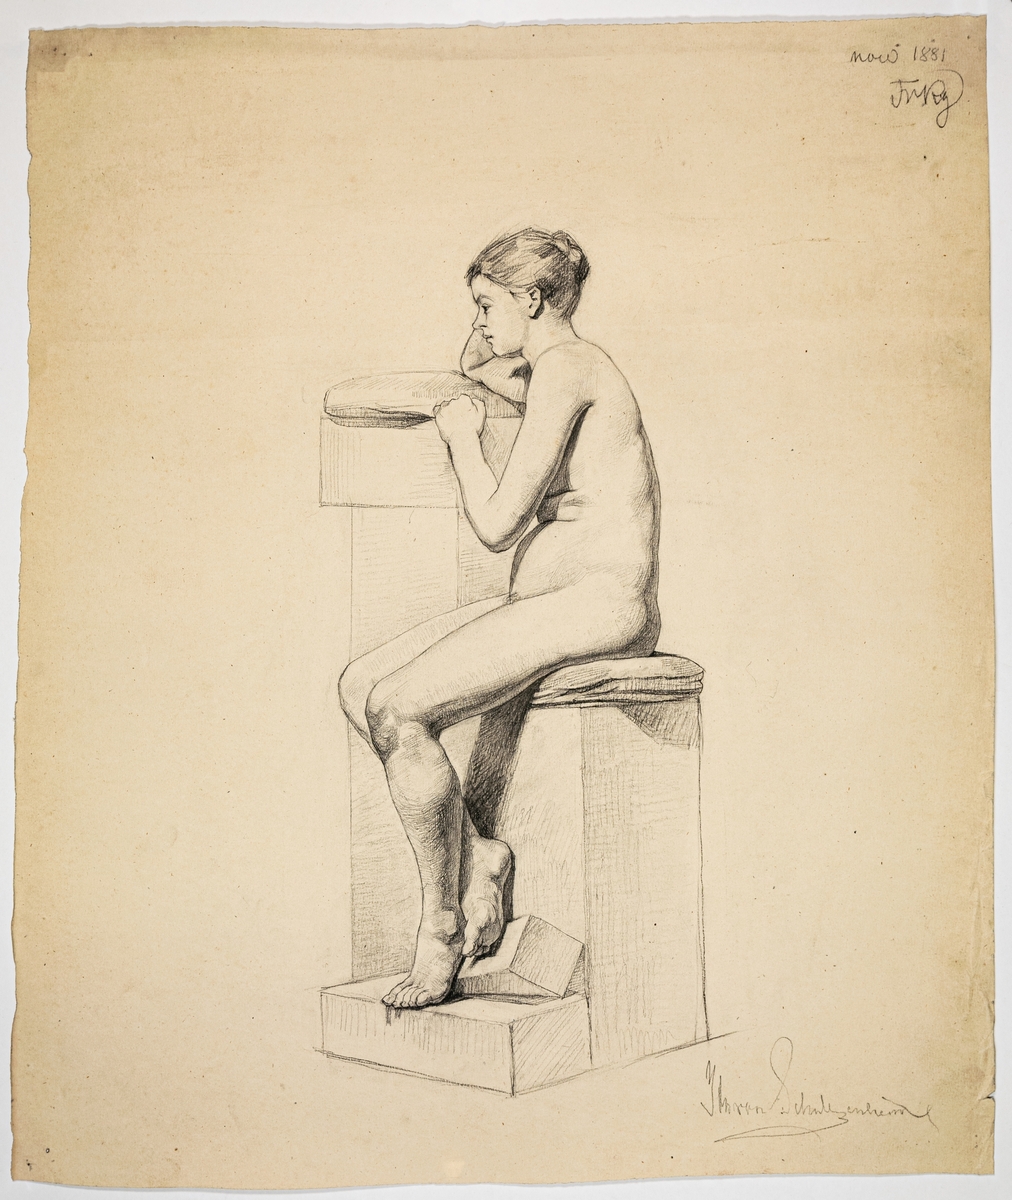 Modellstudie av naken kvinna, sittande. Signerad Ida von Schulzenheim. 
Övrig påskrift: Nov 1881 FrRg
På baksidan skissartad ryggtavla på man.